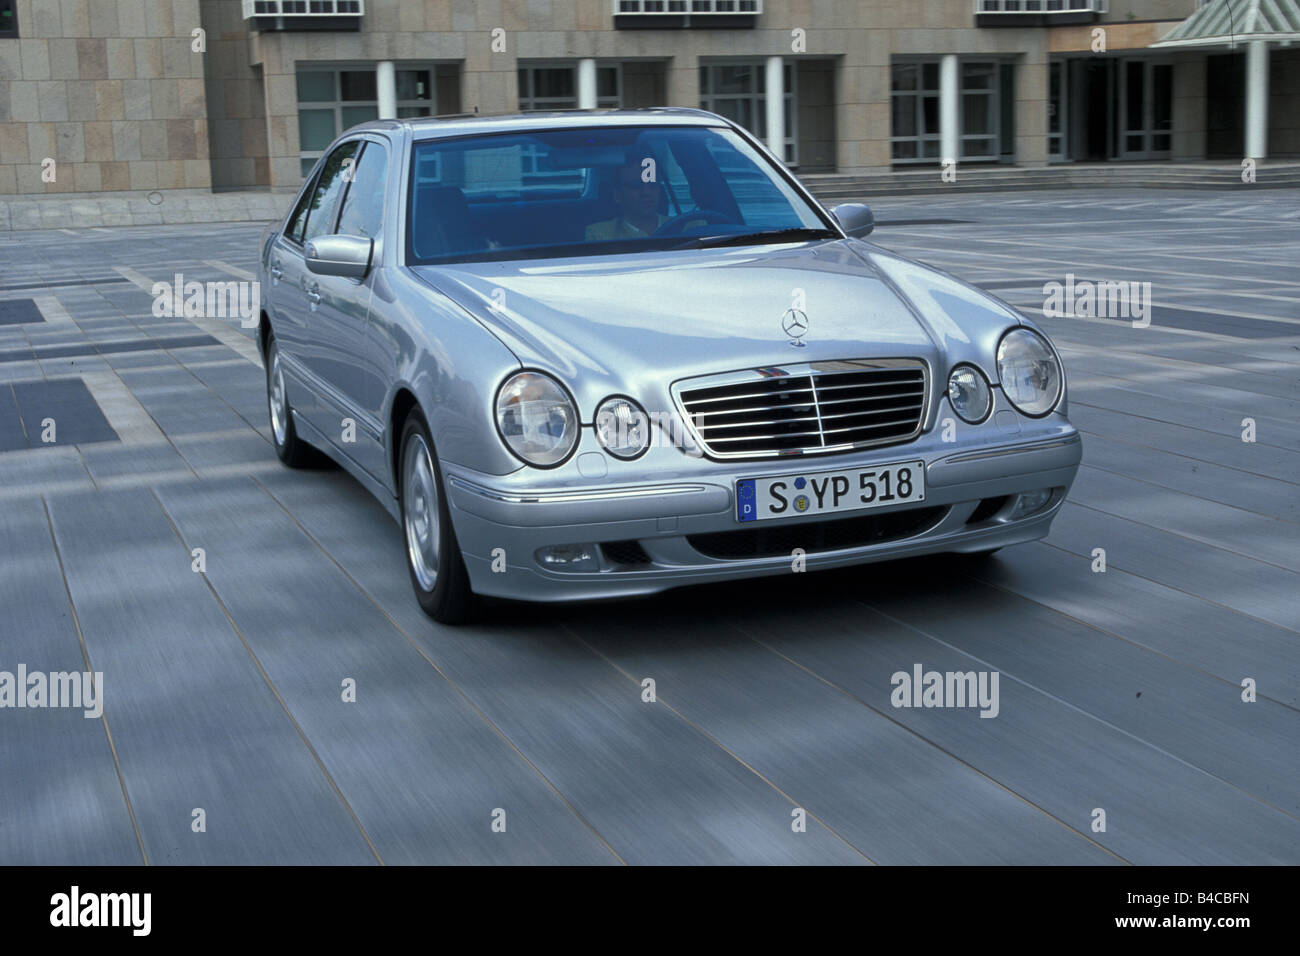 Auto, Mercedes E-Klasse, Limousine, obere mittlere, Modell Jahr 1999-2001,  Silber, fahren, schräg von vorne, frontale v Stockfotografie - Alamy